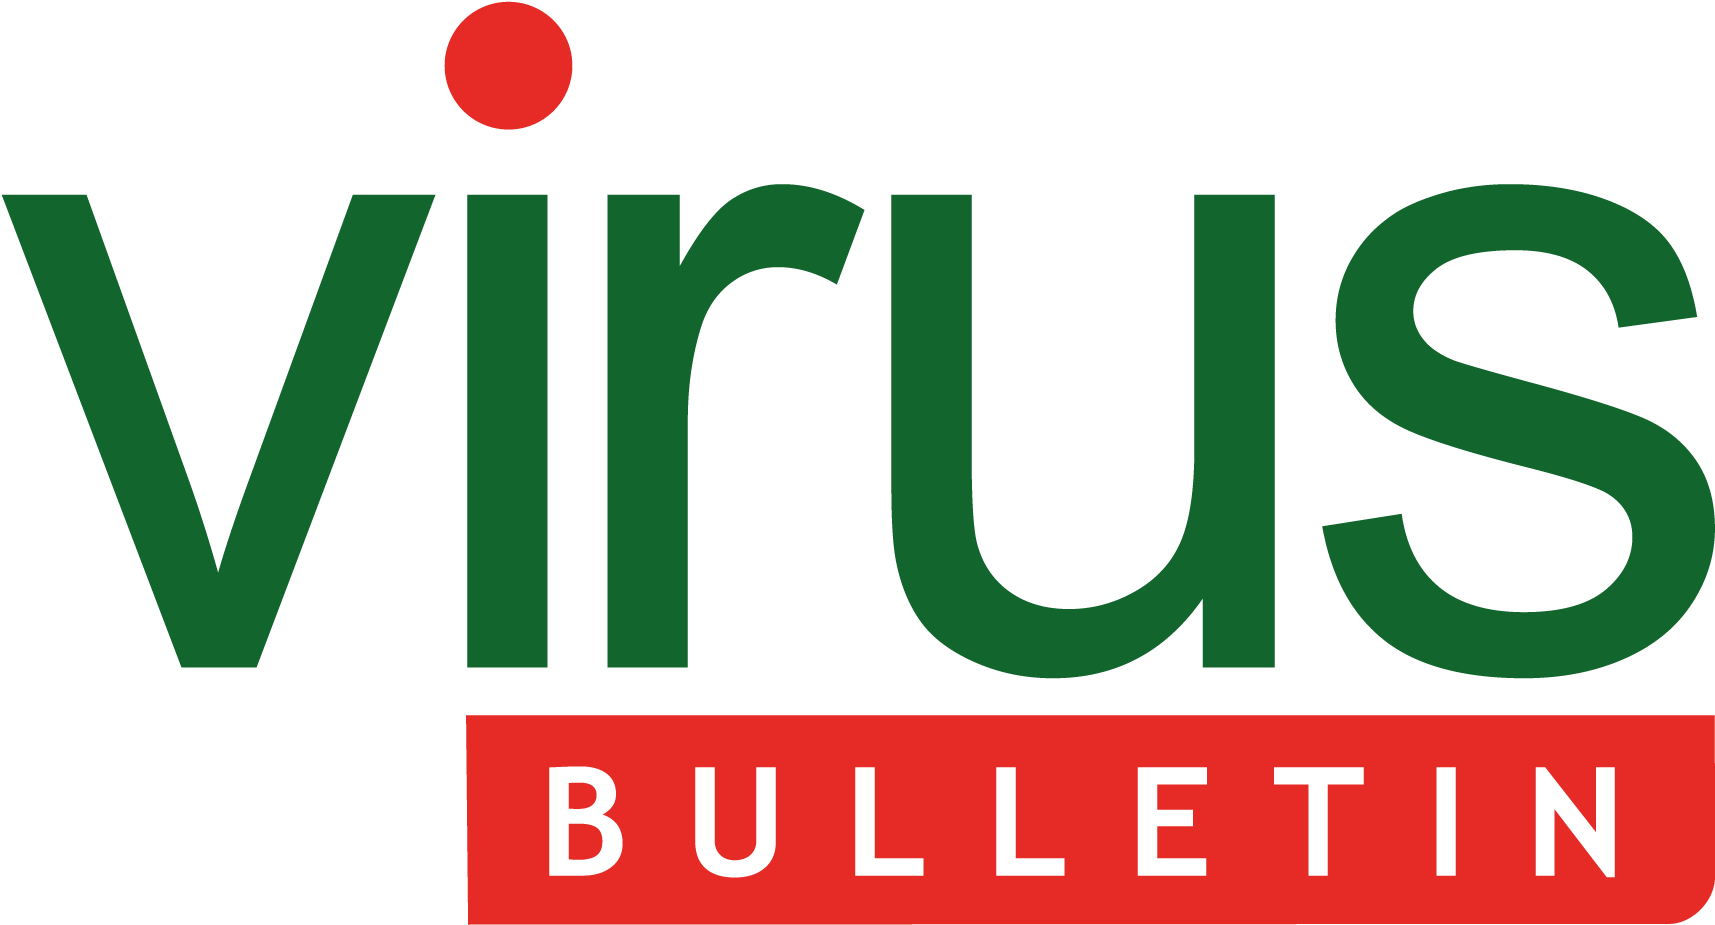 Virus Bulletin Logo In Png Format - Virus Bulletin Clipart (1800x1050), Png Download